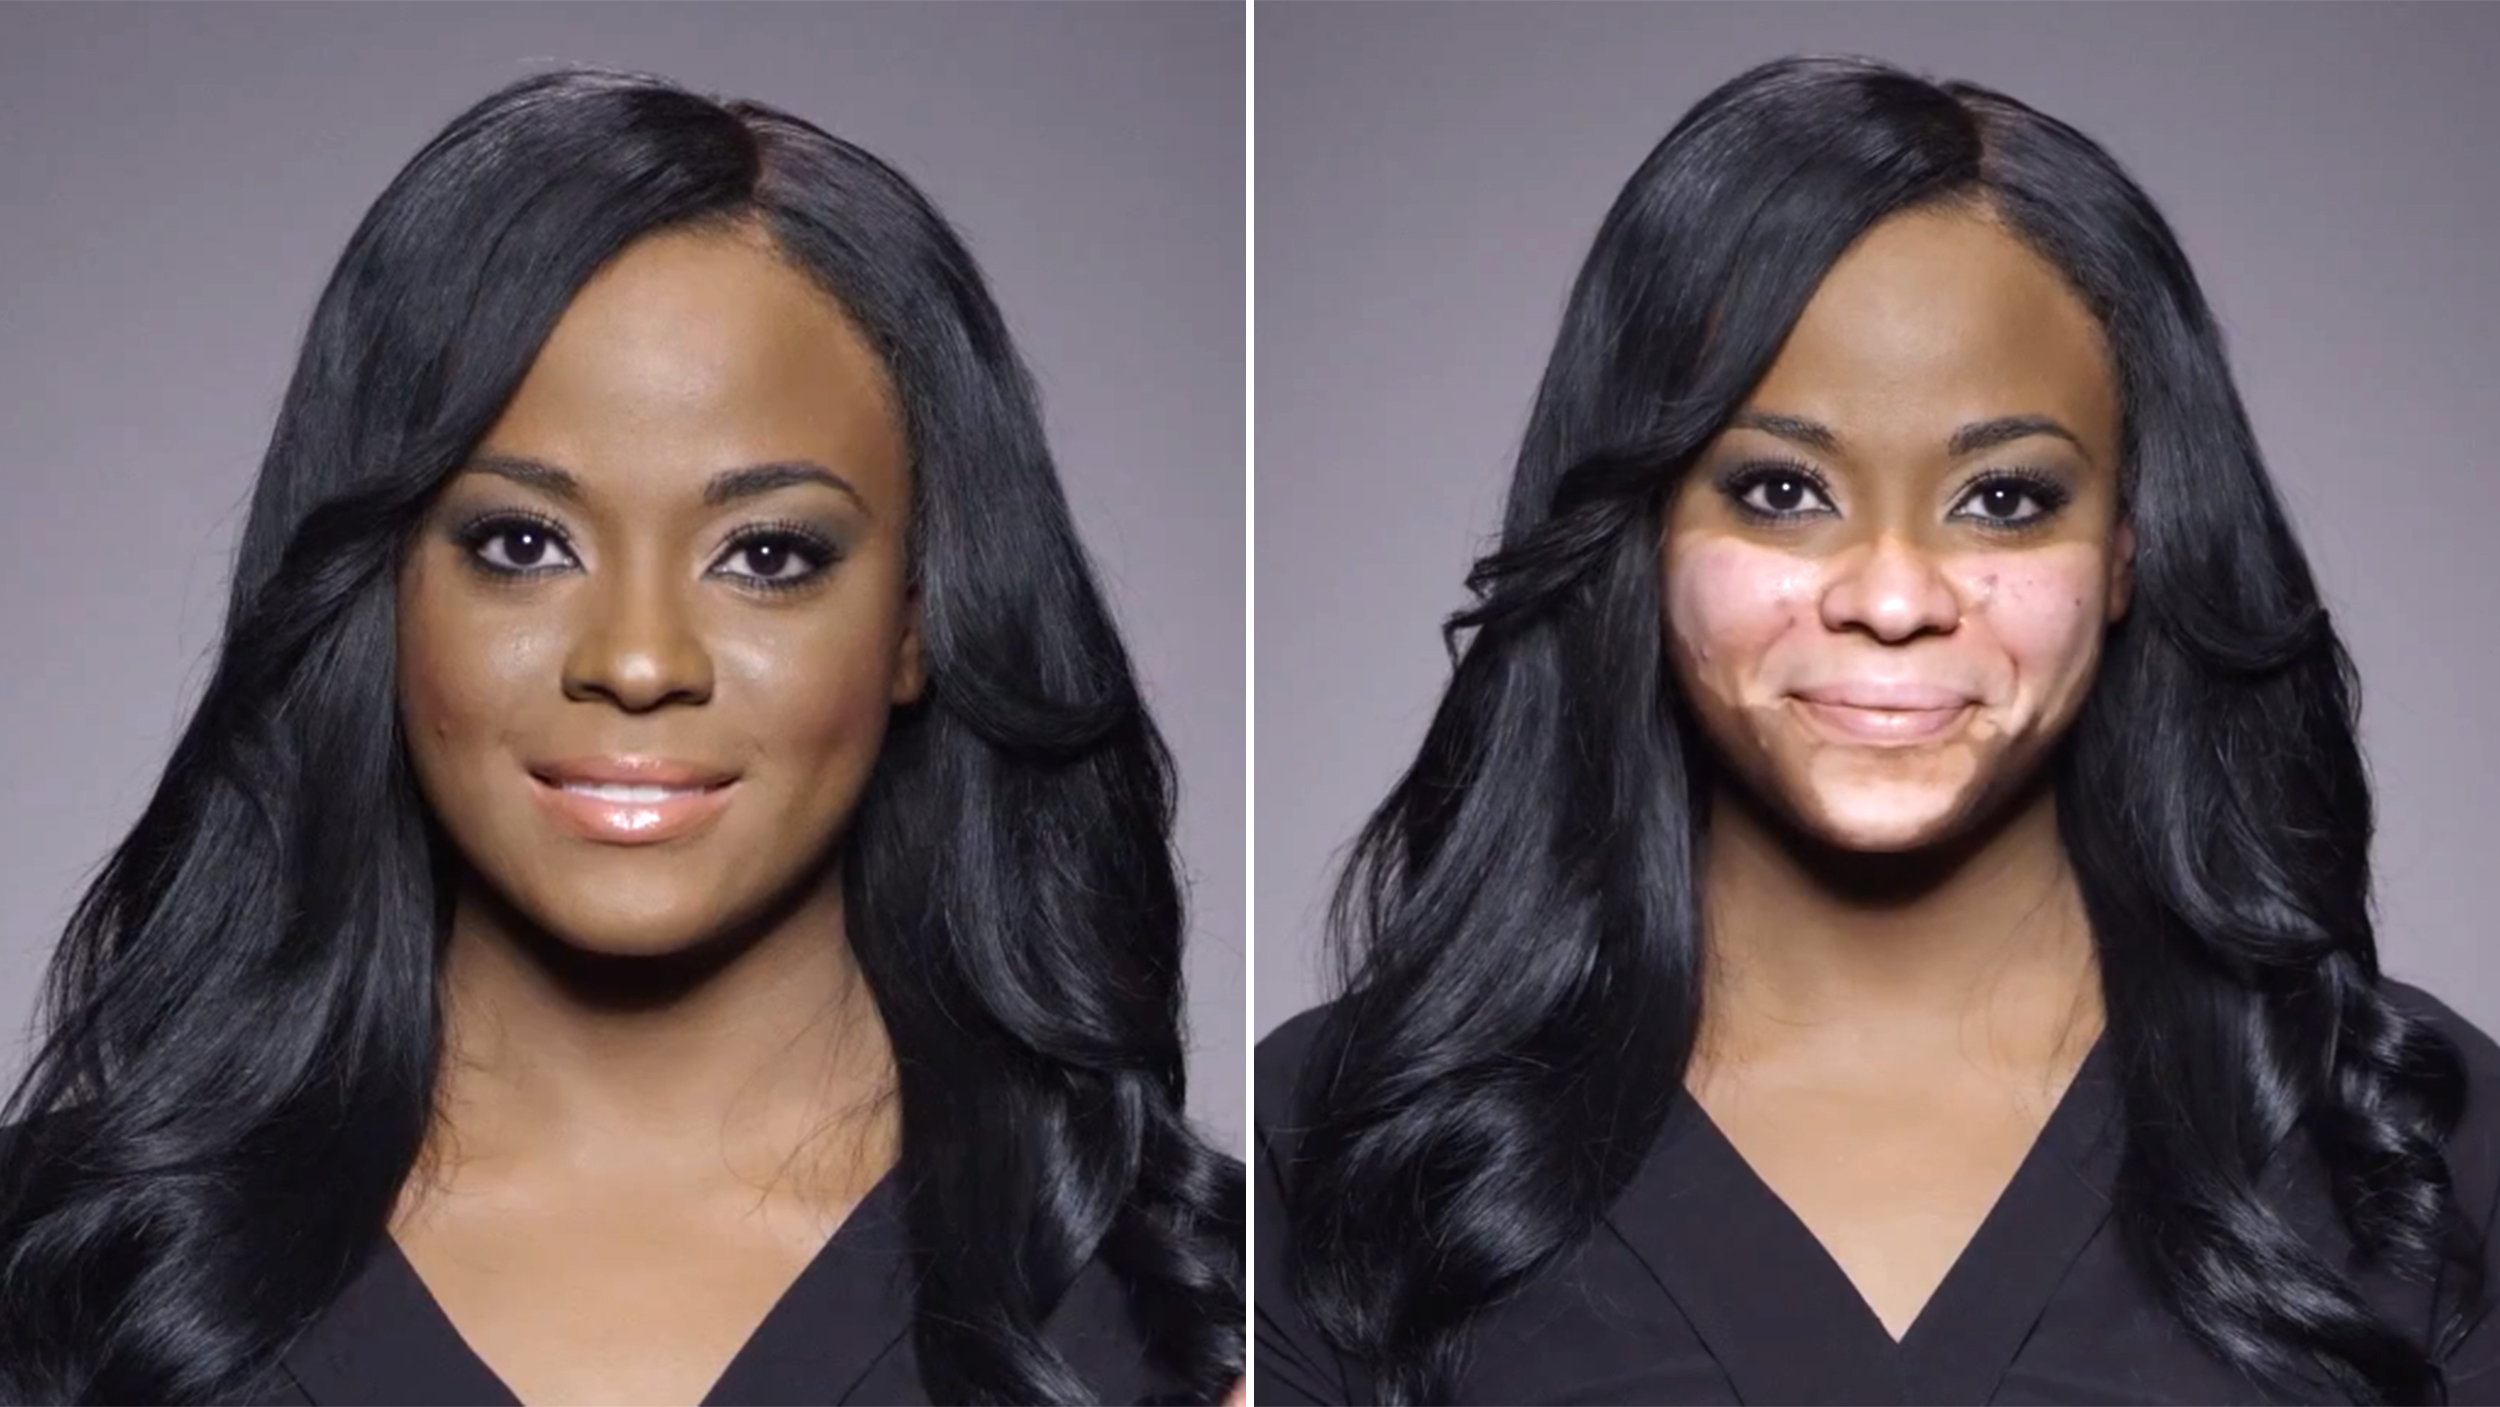 Planlagt Industriel ristet brød Inspiring makeup ads show women embracing flaws, not hiding them